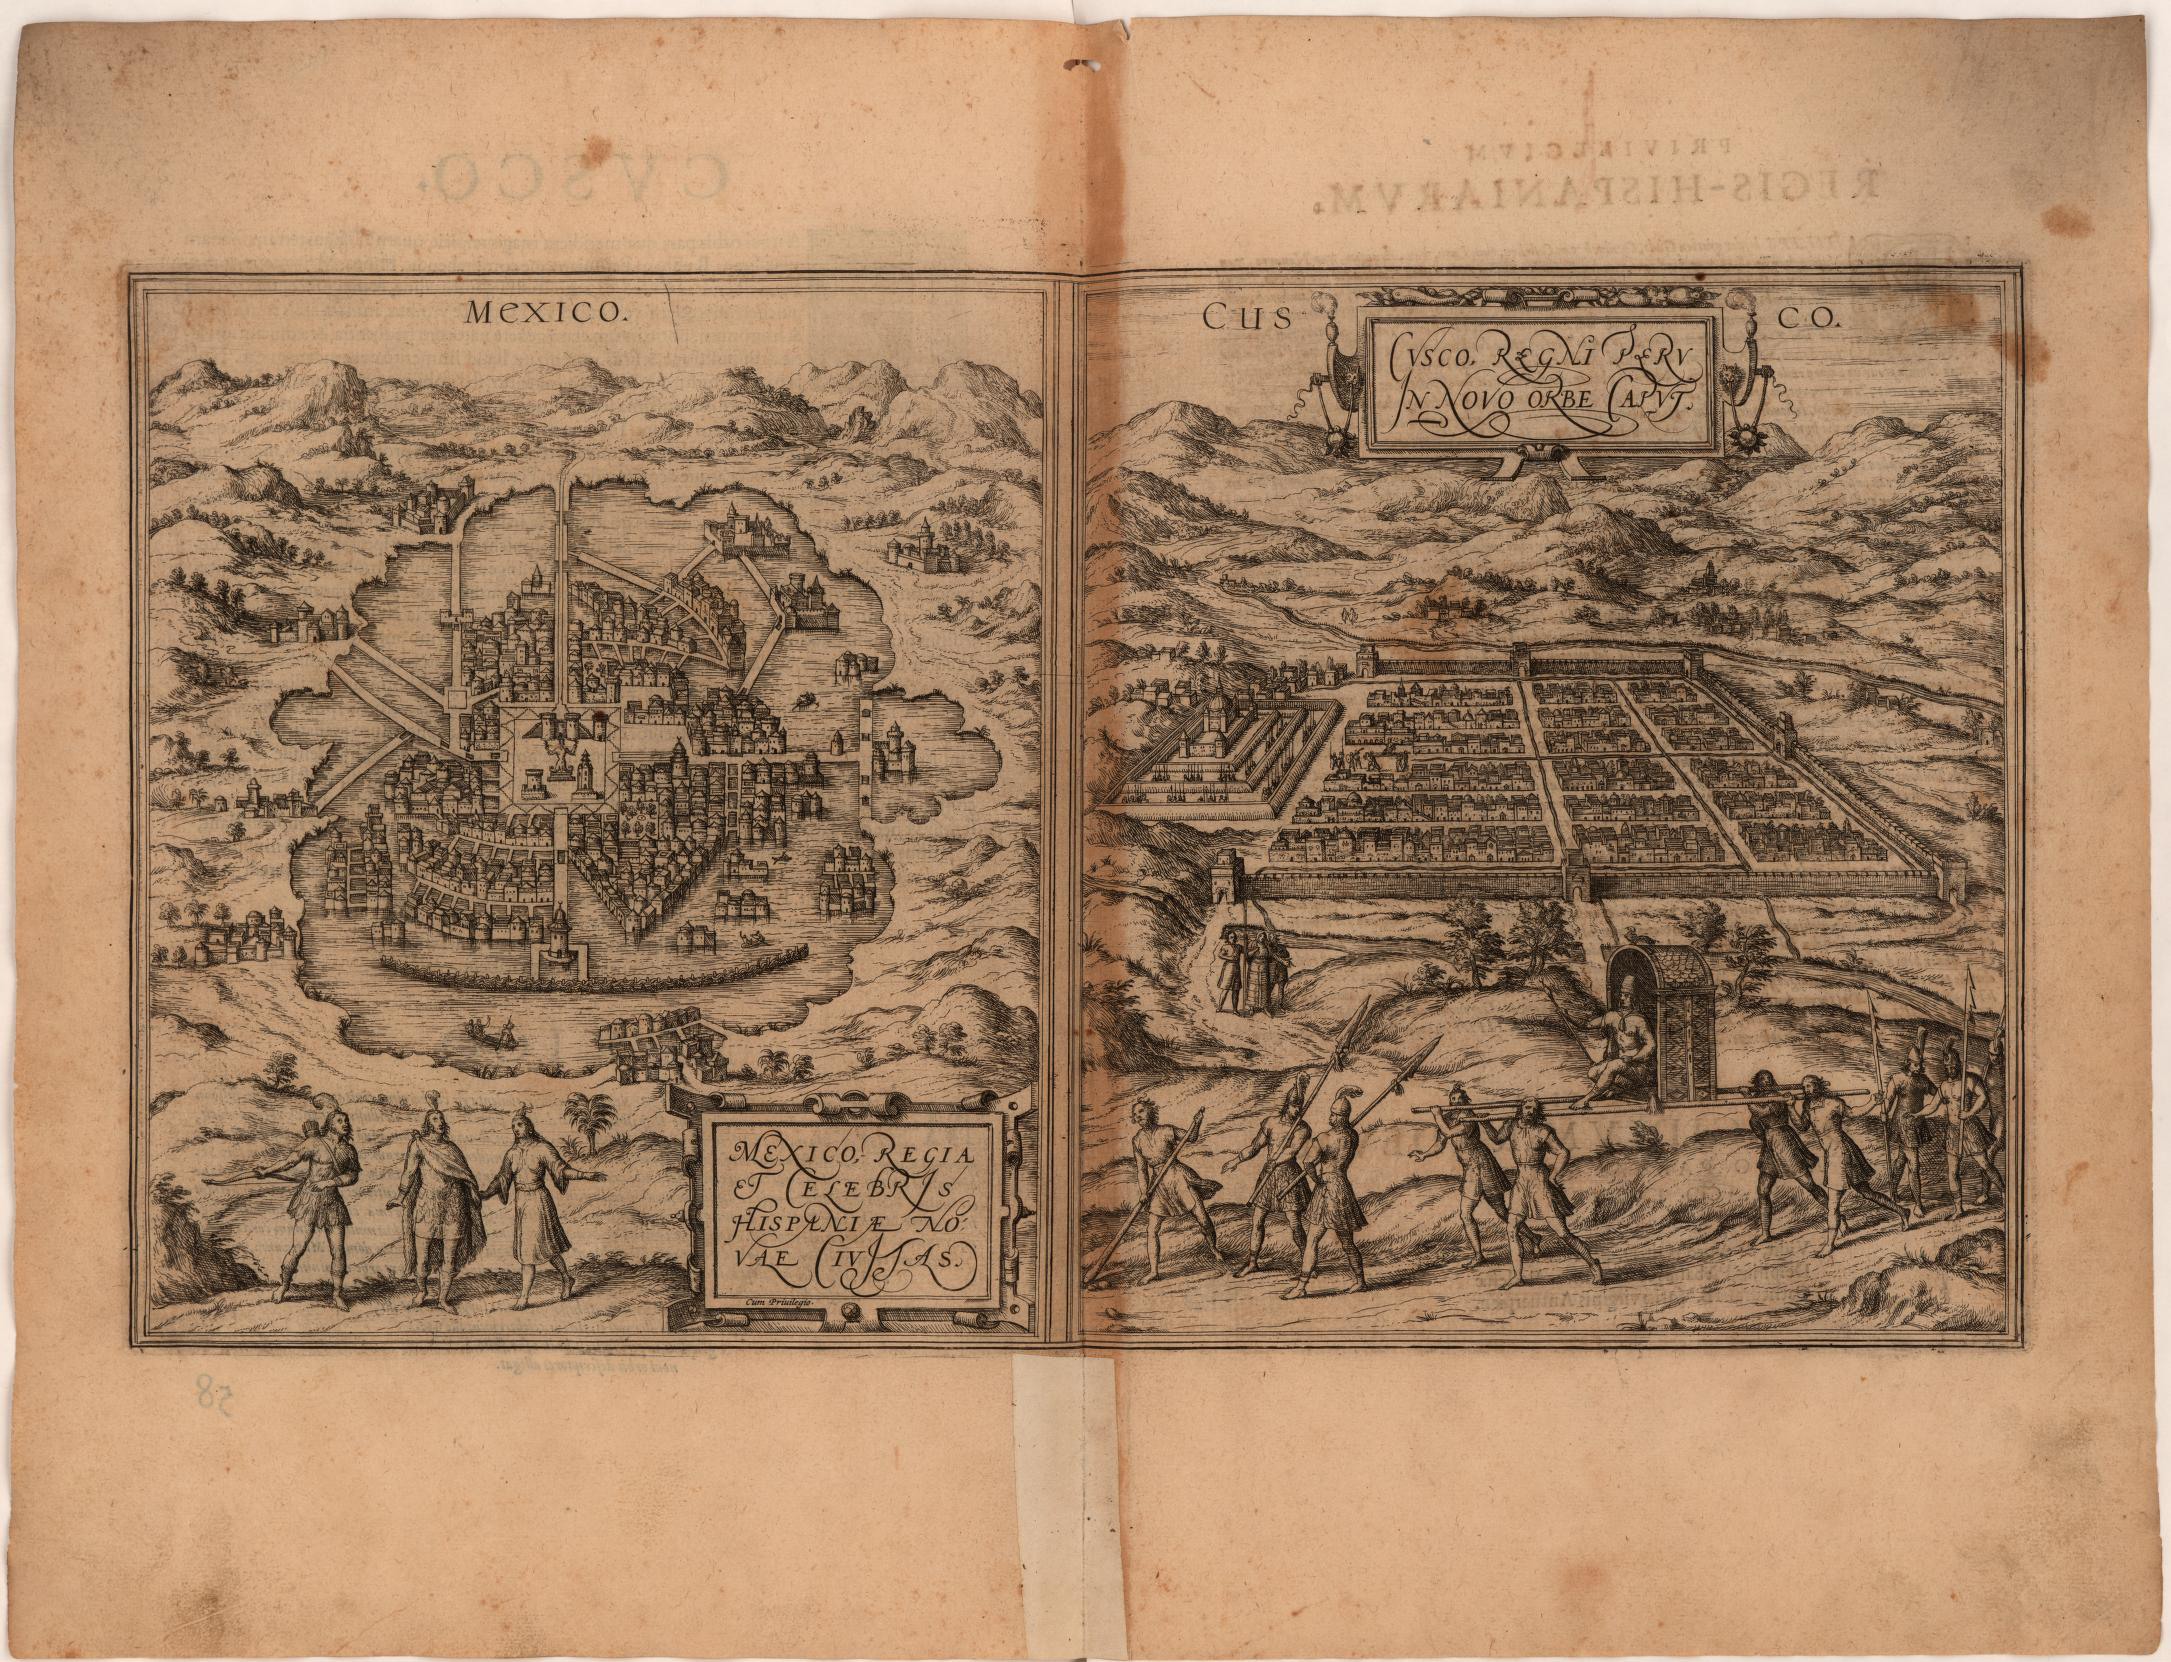 Mapa de las ciudades prehispánicas de Tenochtitlán y Cuzco, 1575